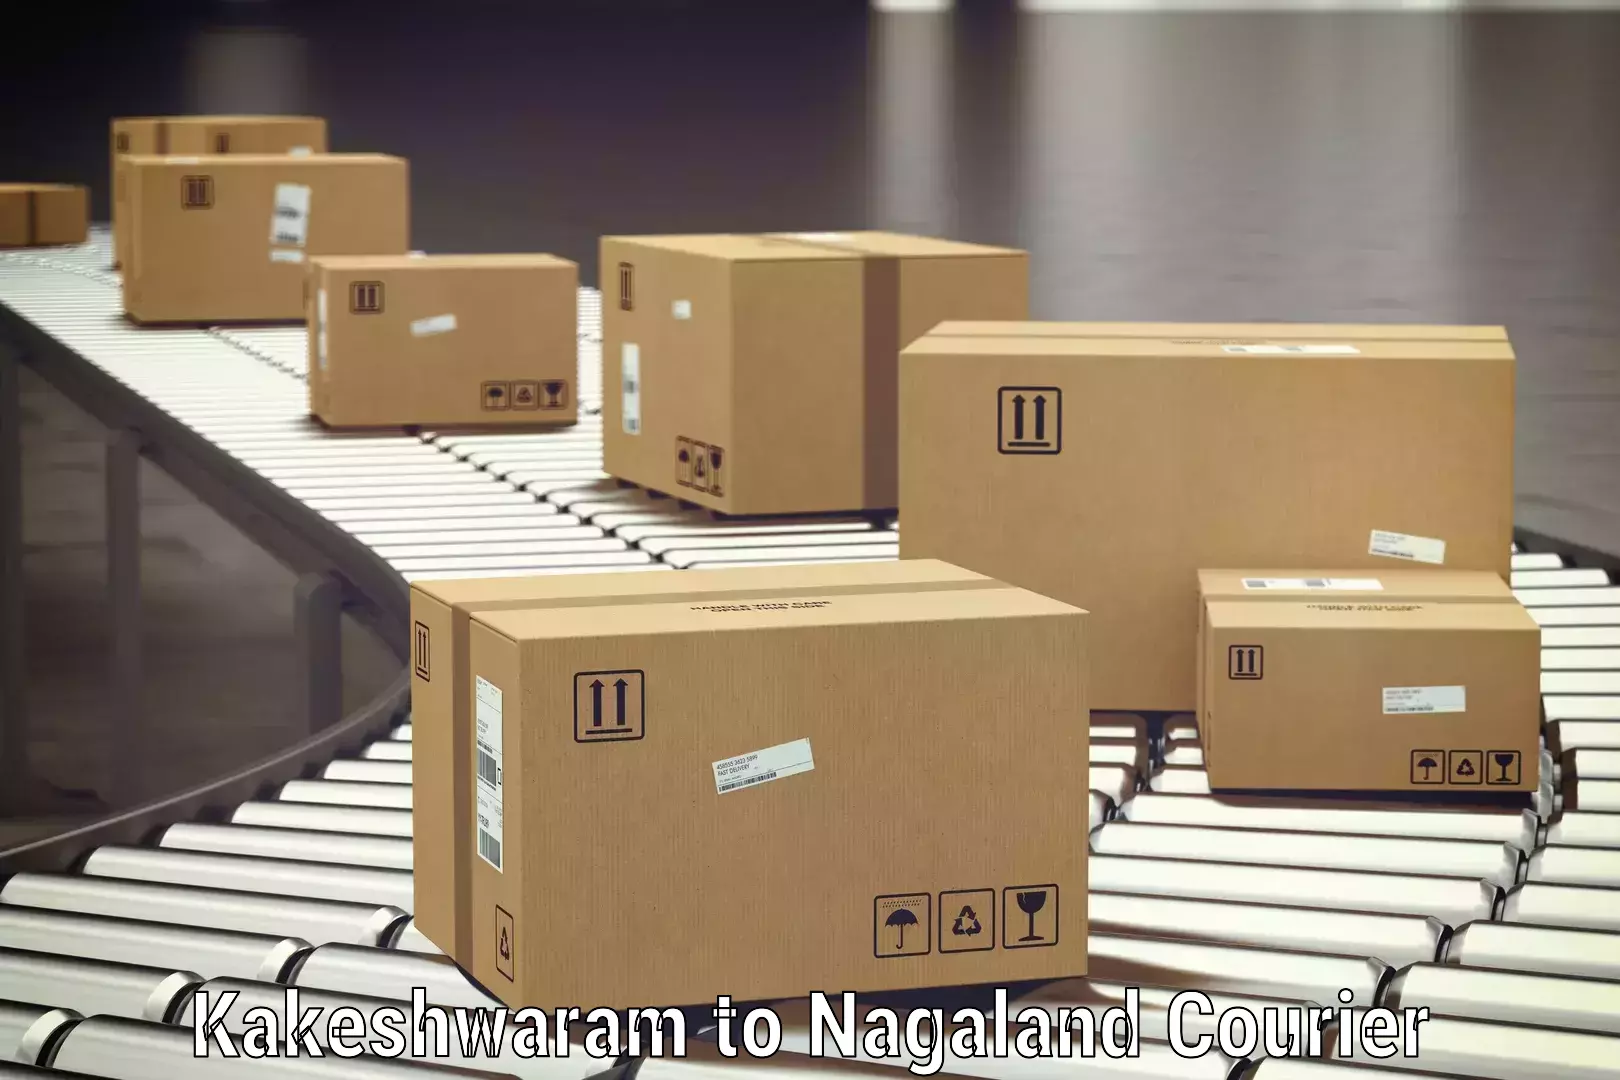 Luggage shipment tracking Kakeshwaram to Nagaland